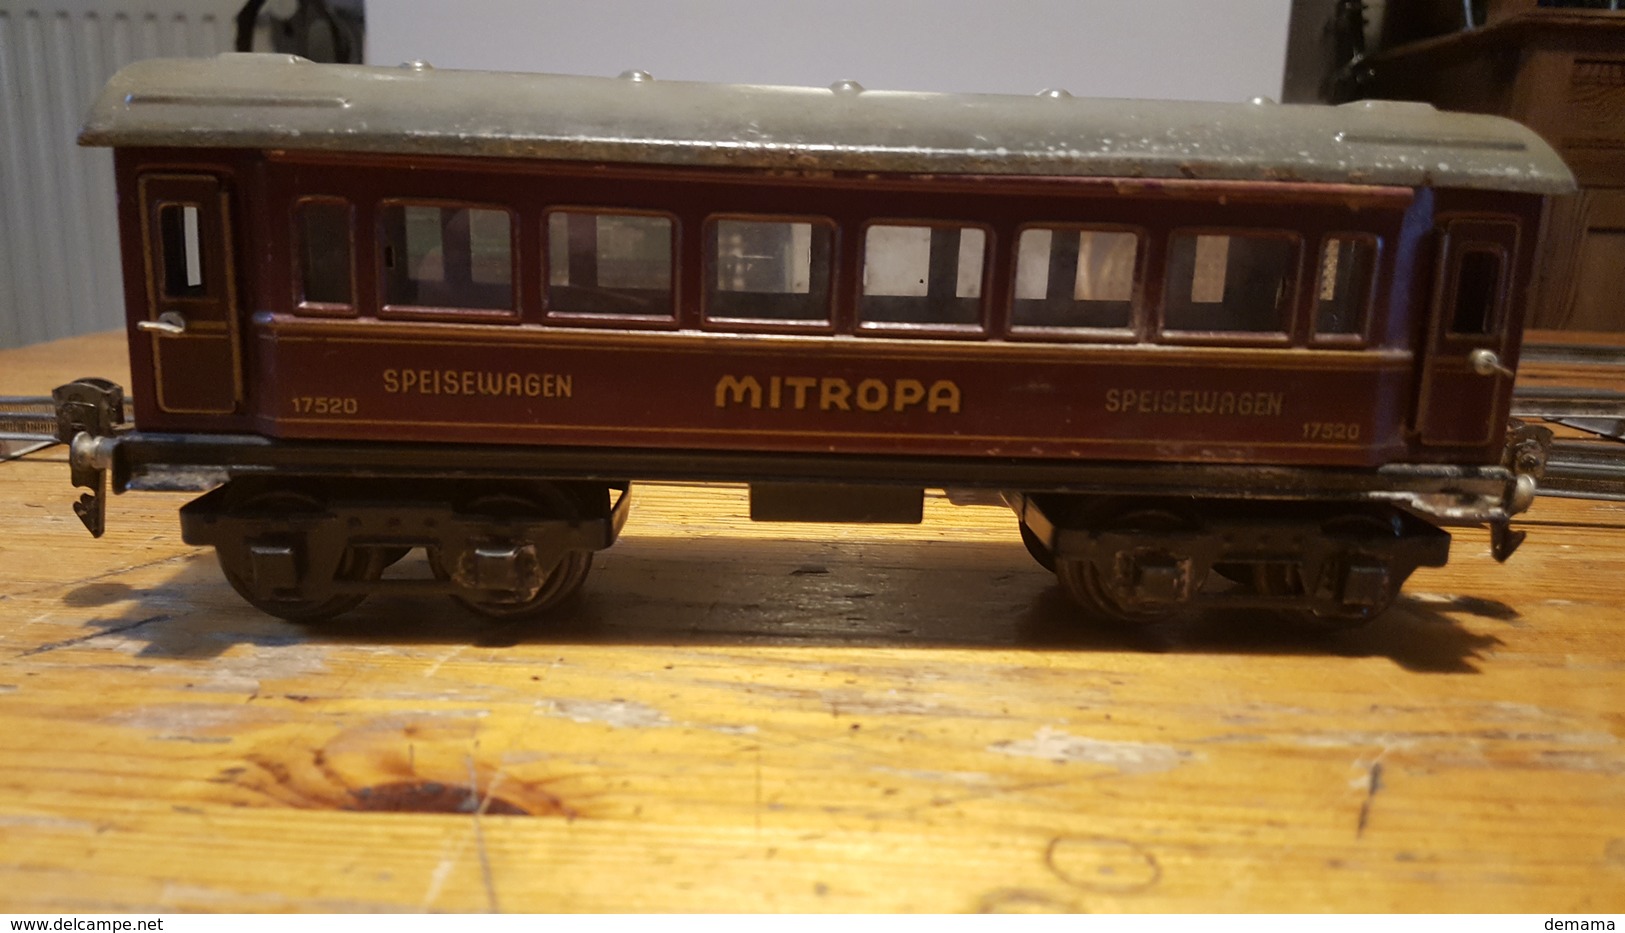 Märklin, oud, 3 wagons spoorbreedte 35 mm